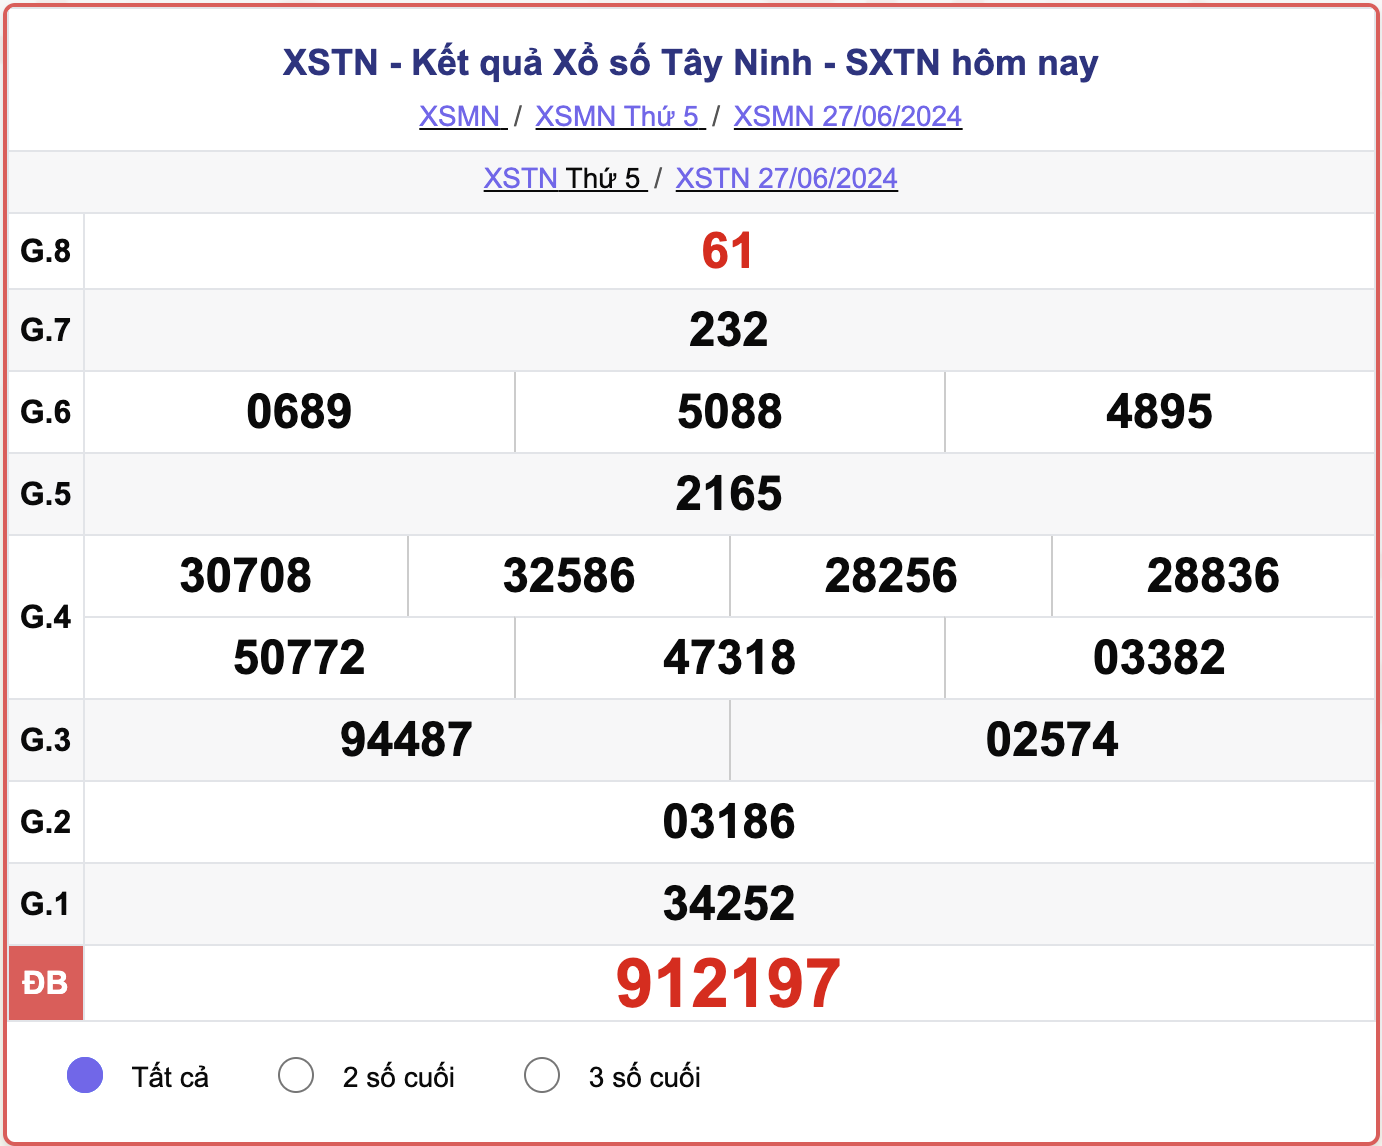 XSTN 27/6, kết quả xổ số Tây Ninh hôm nay 27/6/2024.